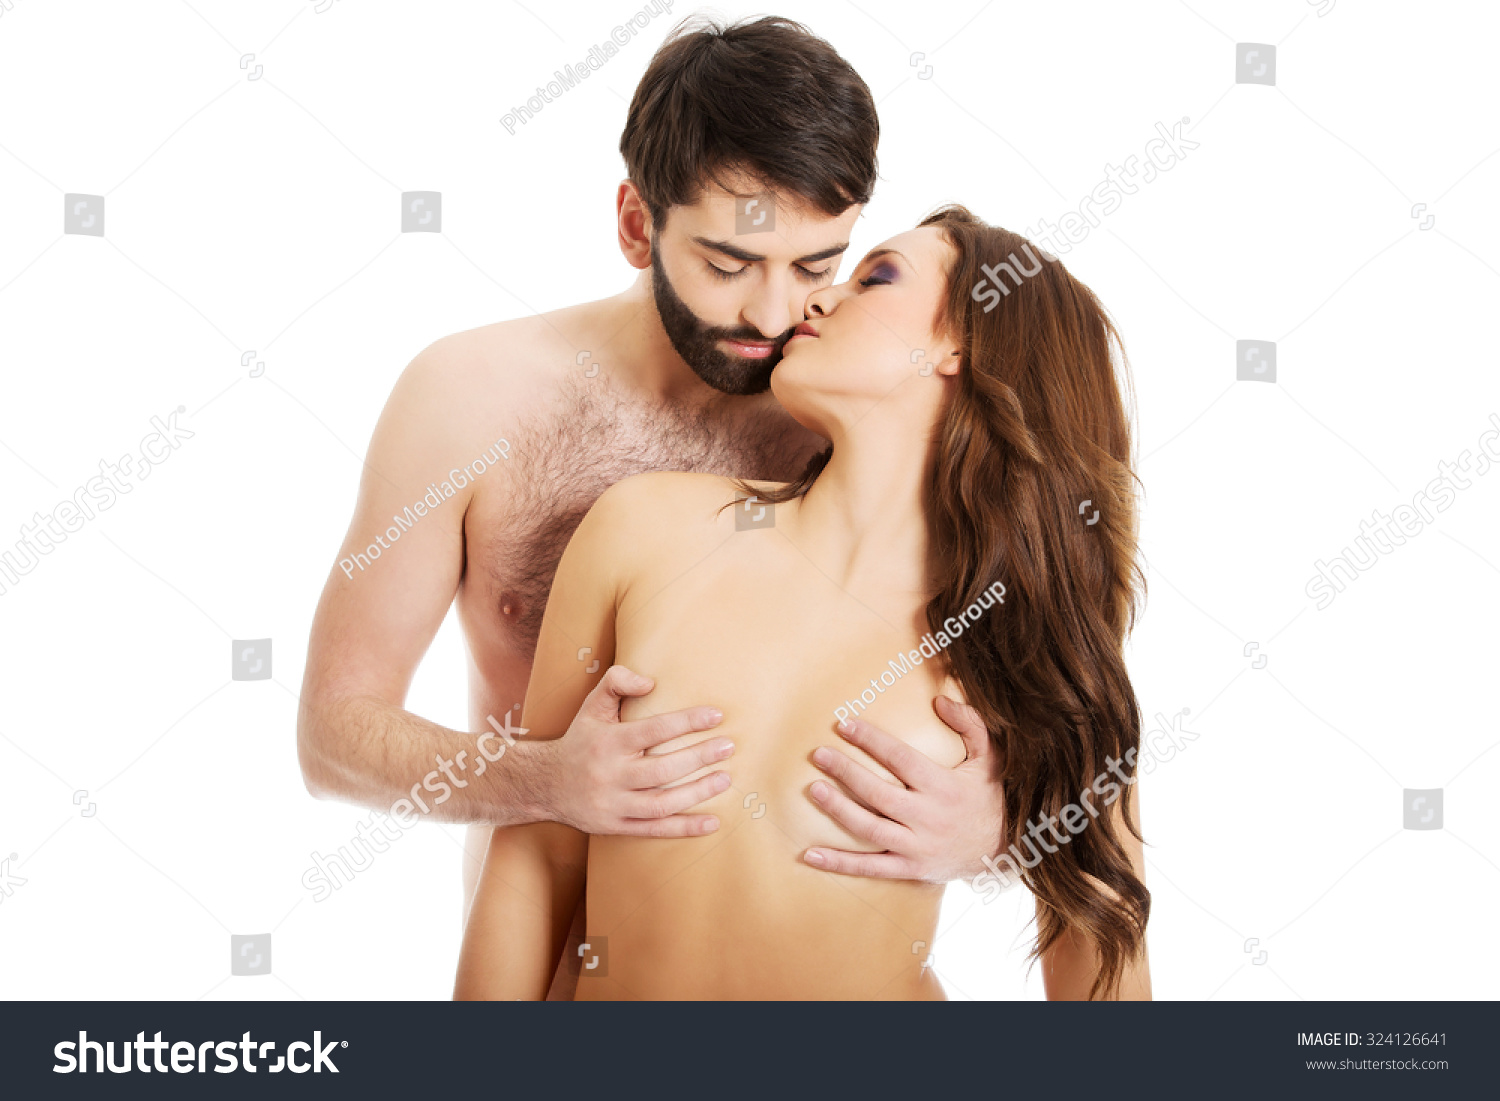 ahmed el barbry recommends men kissing womens tits pic